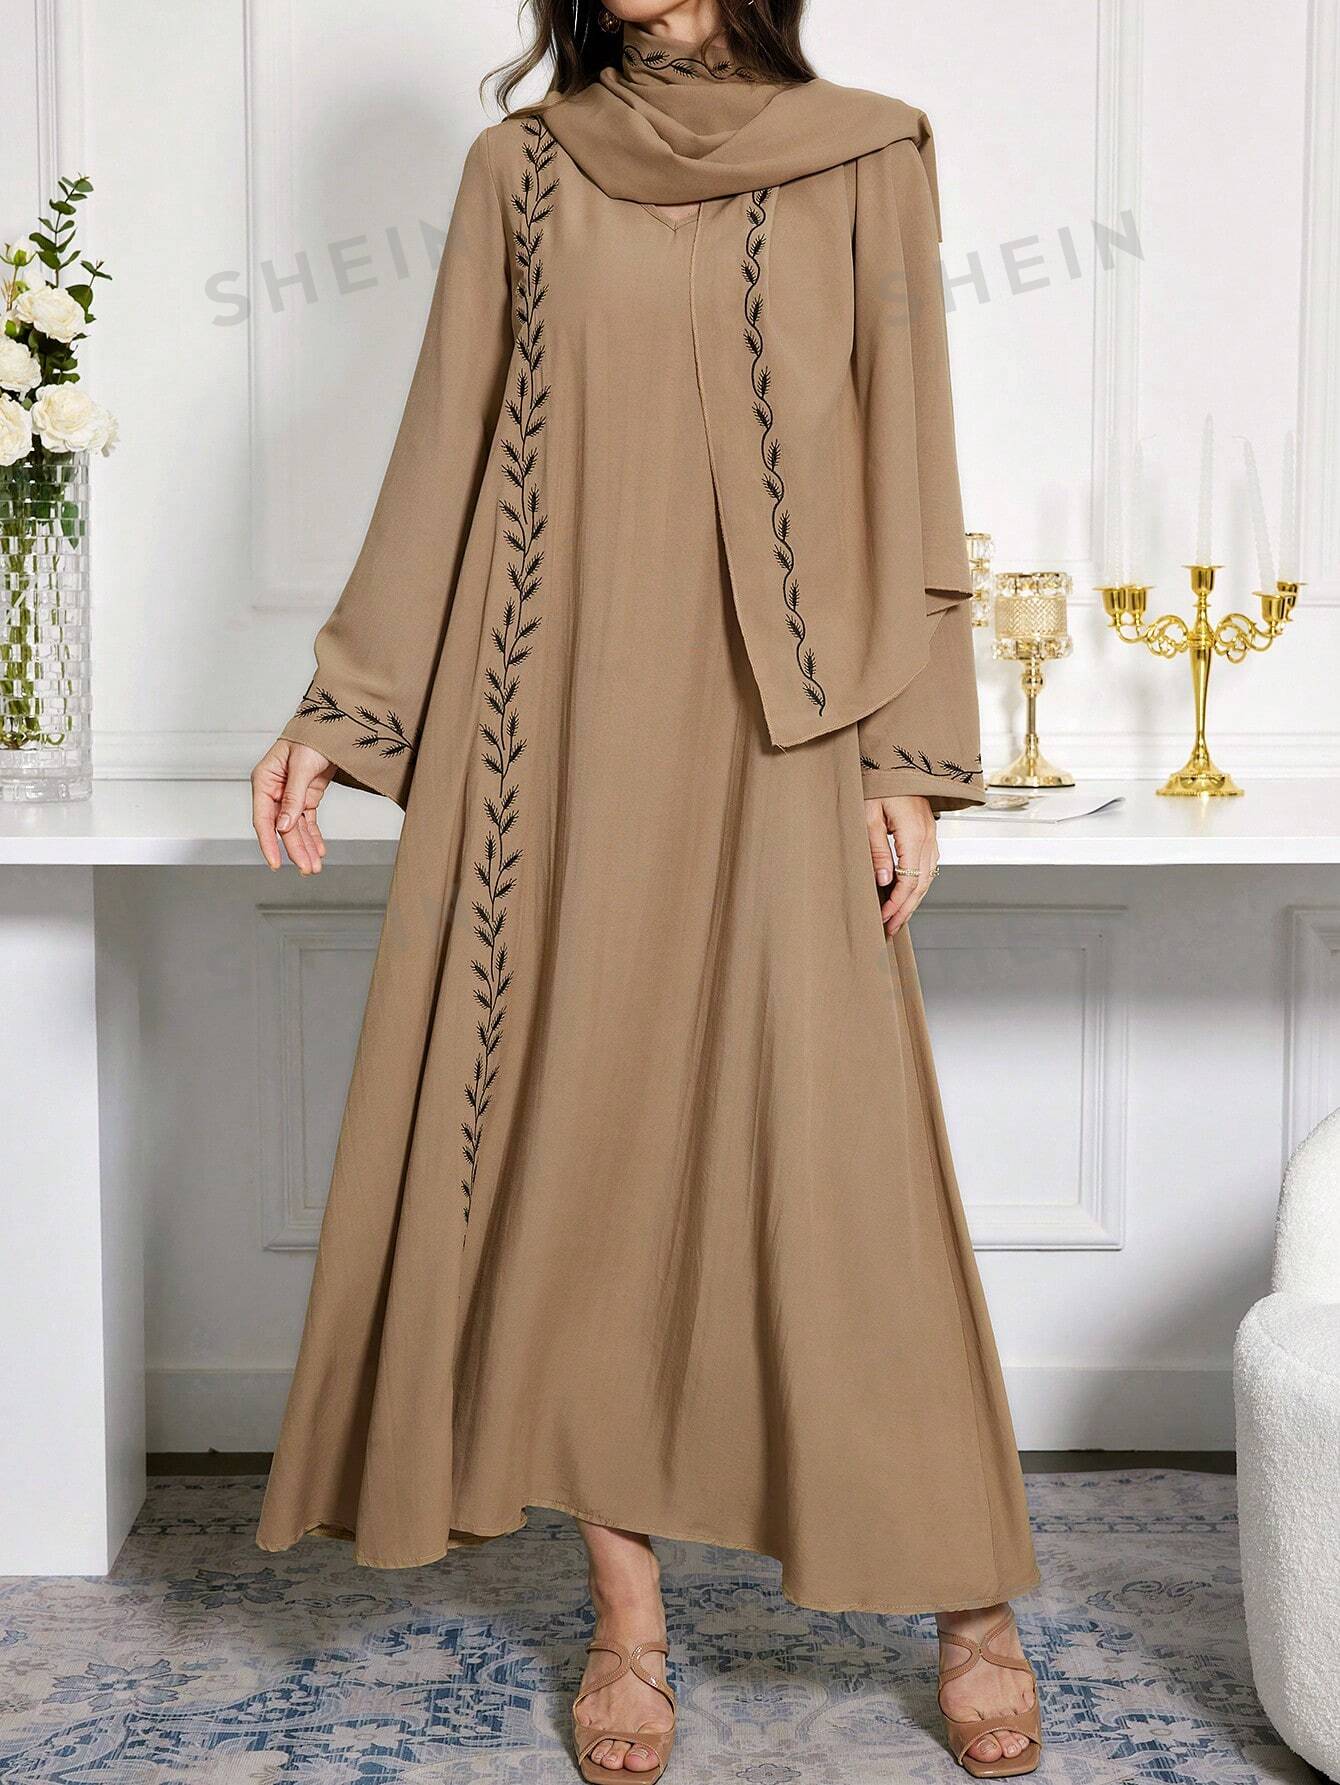 SHEIN Najma женское платье в арабском стиле с v-образным вырезом и вышивкой, коричневый женское свадебное платье с кружевной аппликацией белое простое атласное платье в стиле бохо с v образным вырезом лето 2021